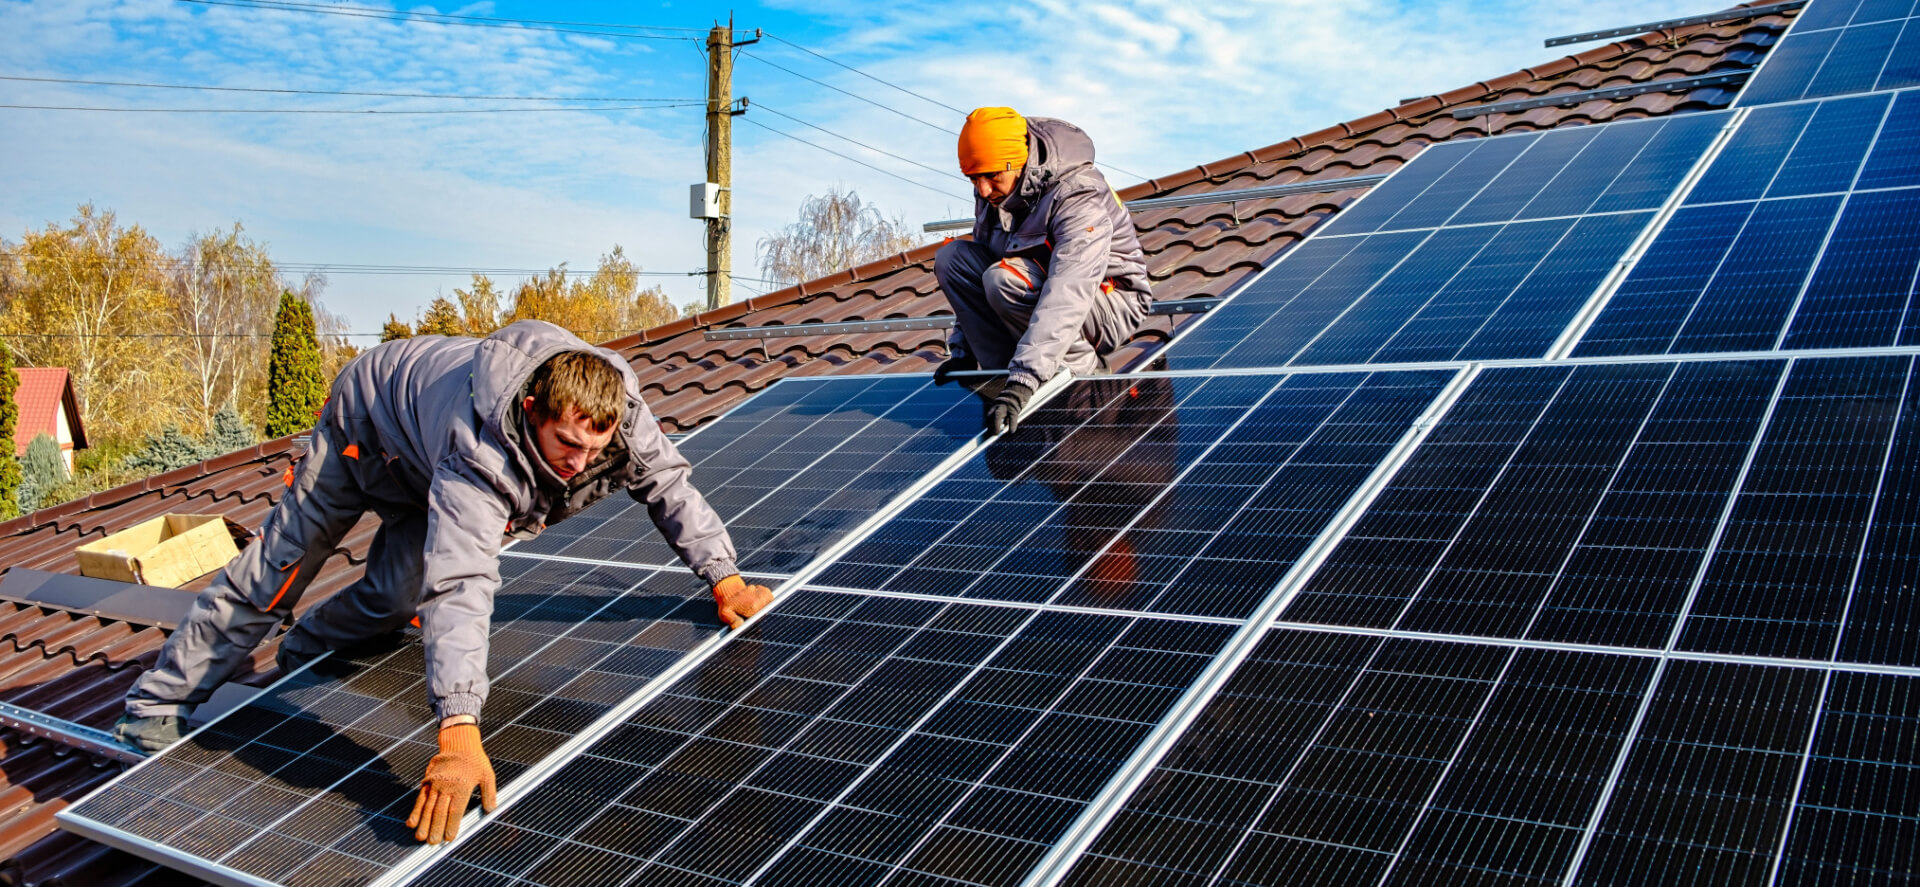 Zwei Männer arbeiten auf einem Hausdach und installieren Photovoltaik-Module.